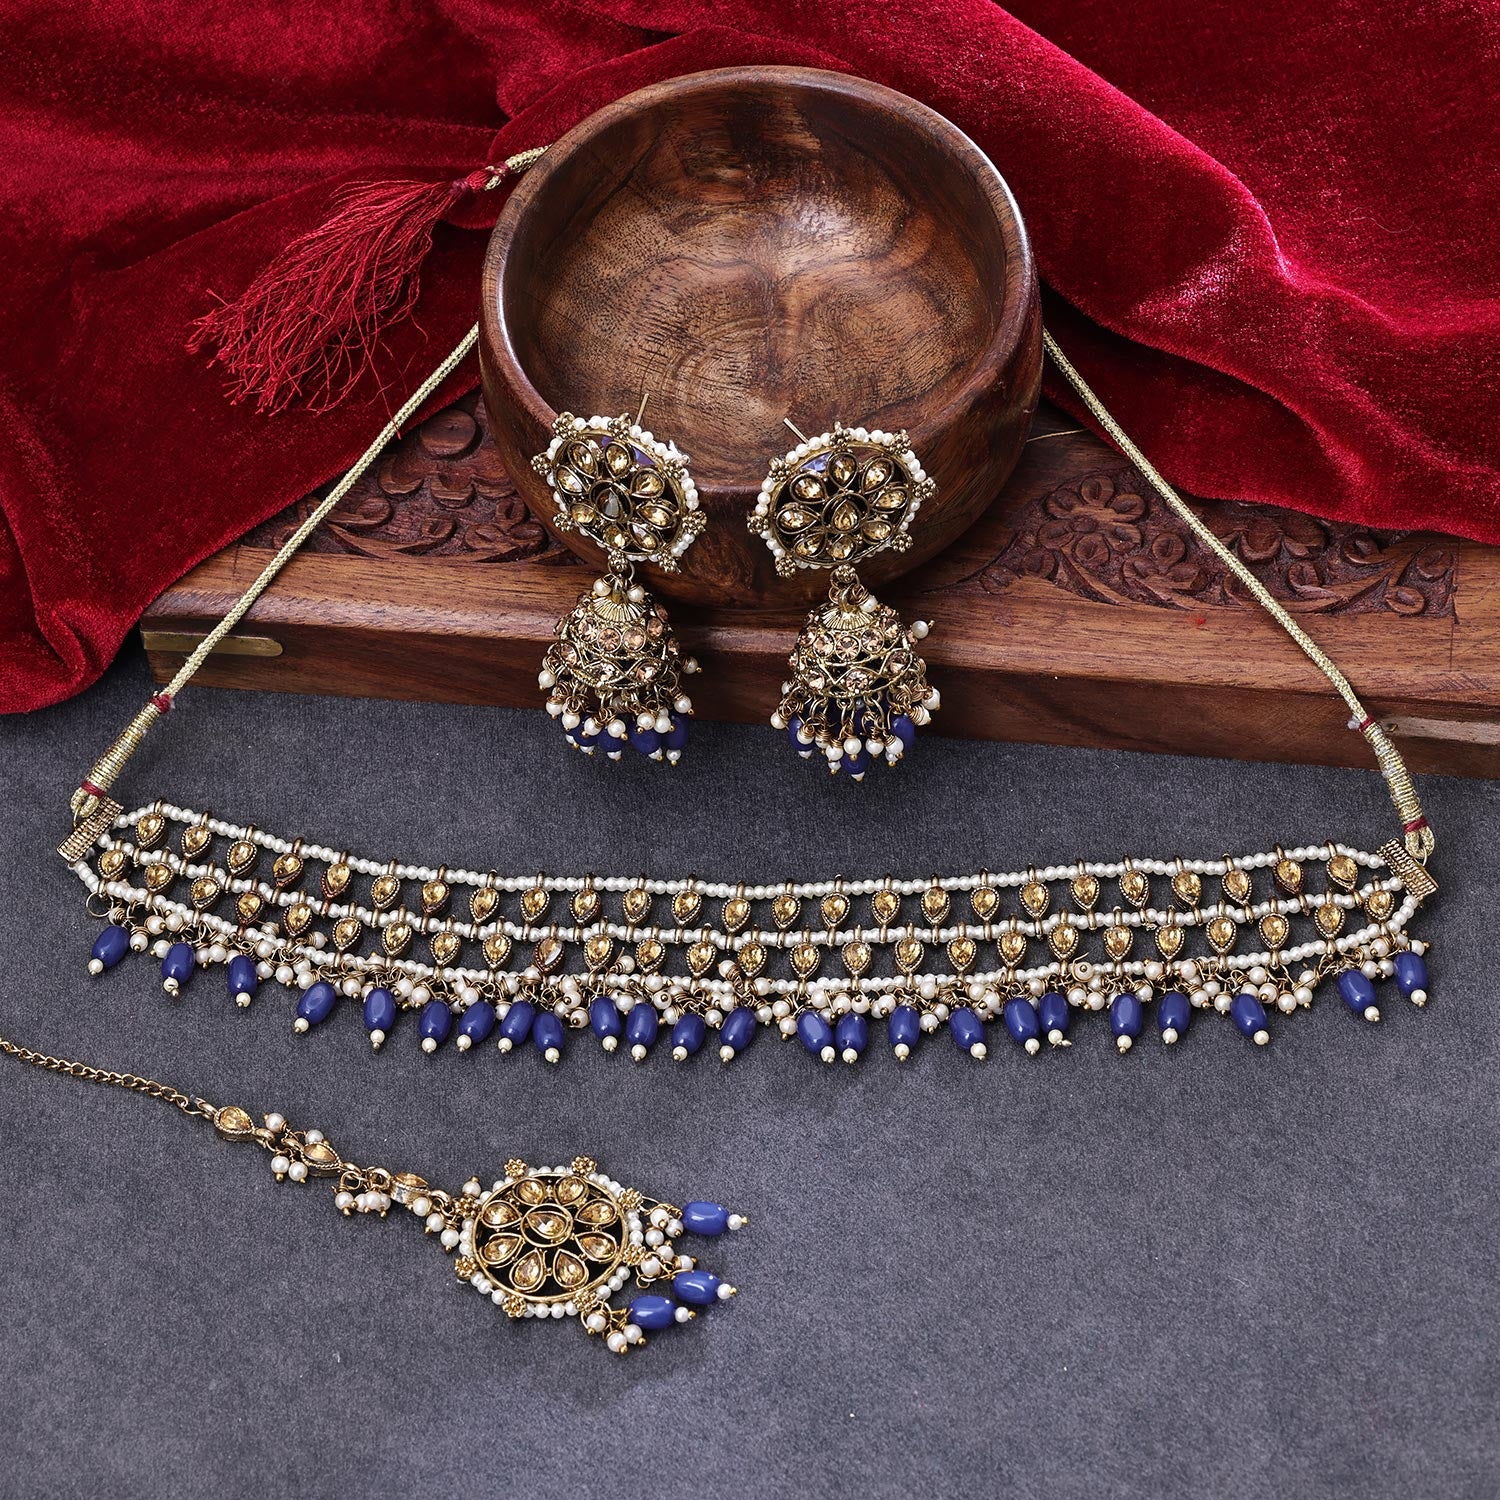 Elisa Silver Pendant Necklace in London Blue Glass | Kendra Scott